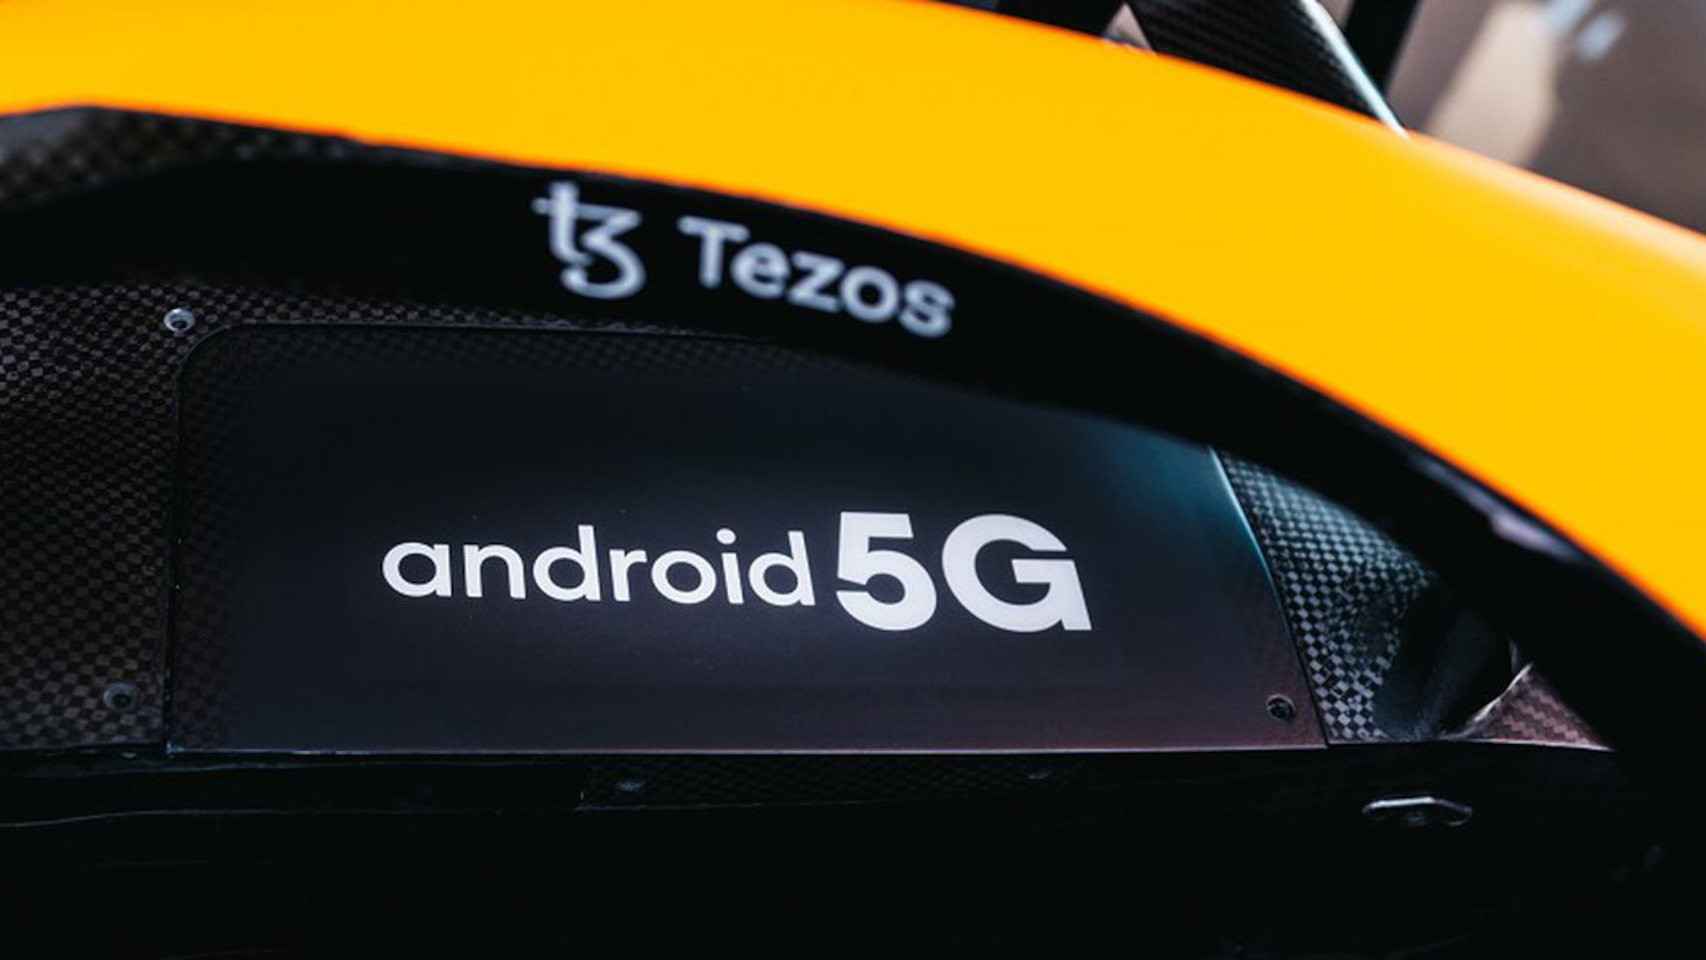 El McLaren llevará pantallas con los logotipos de Android